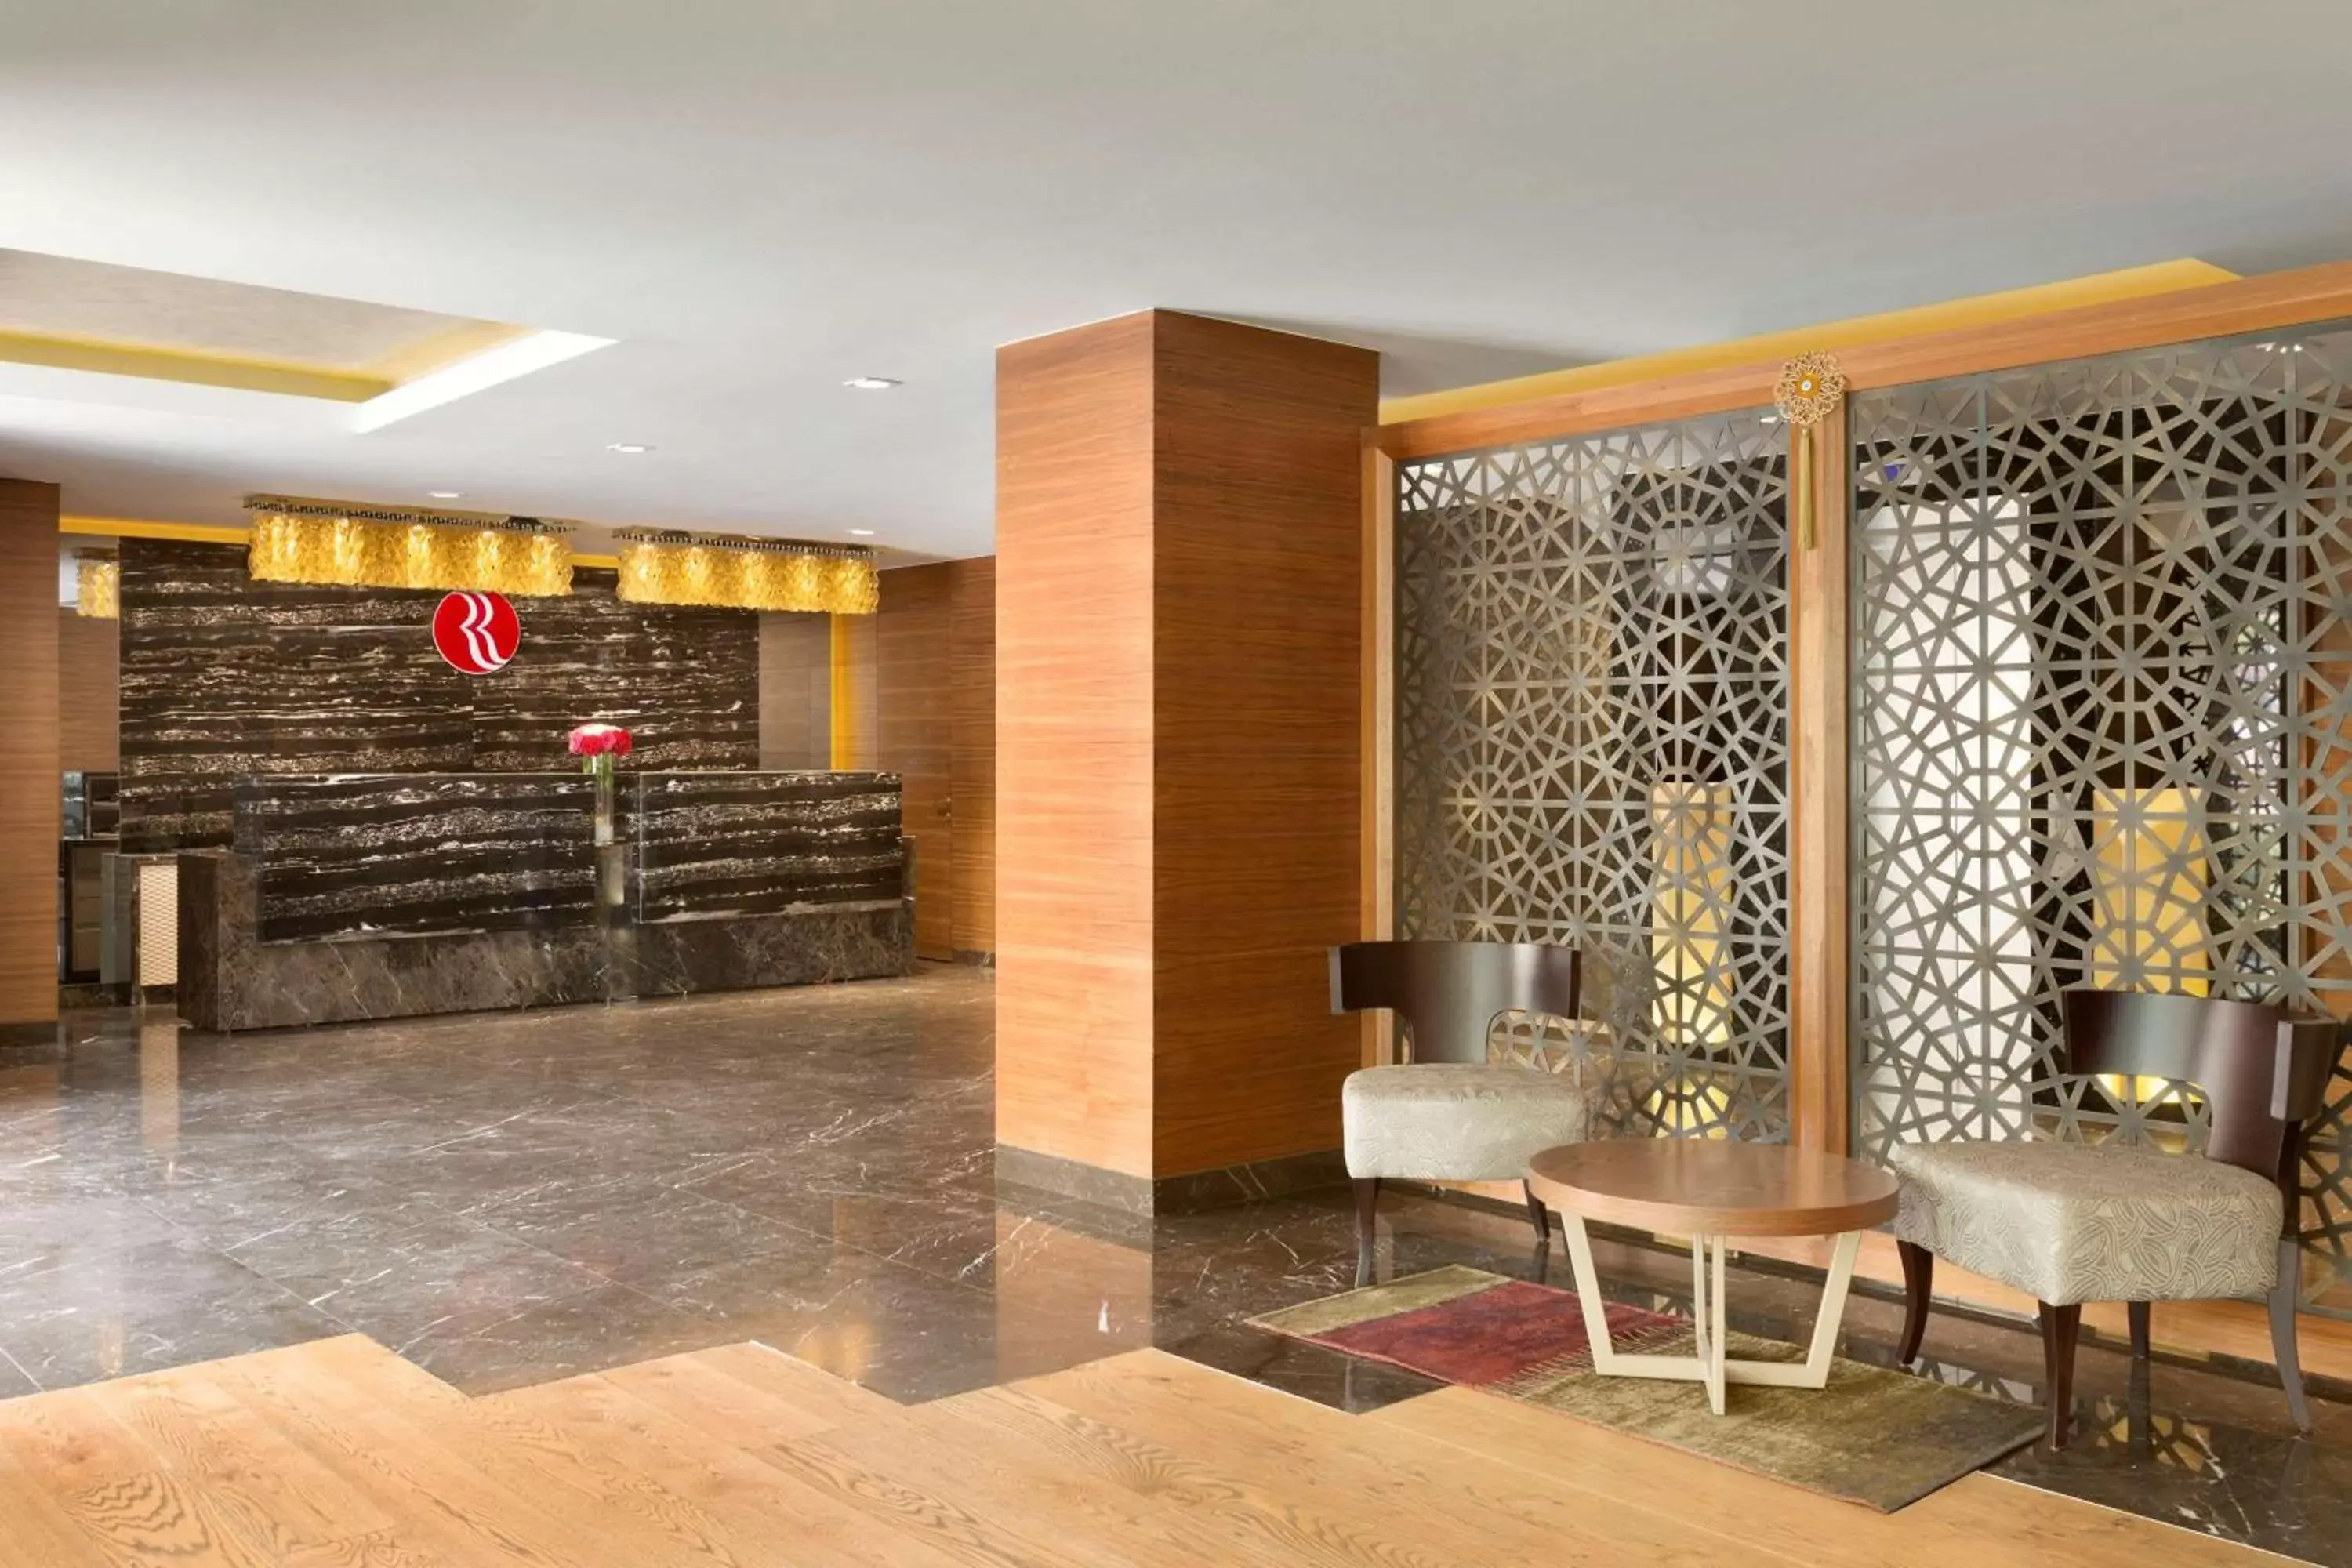 Lobby or reception in Ramada by Wyndham Gemli̇k